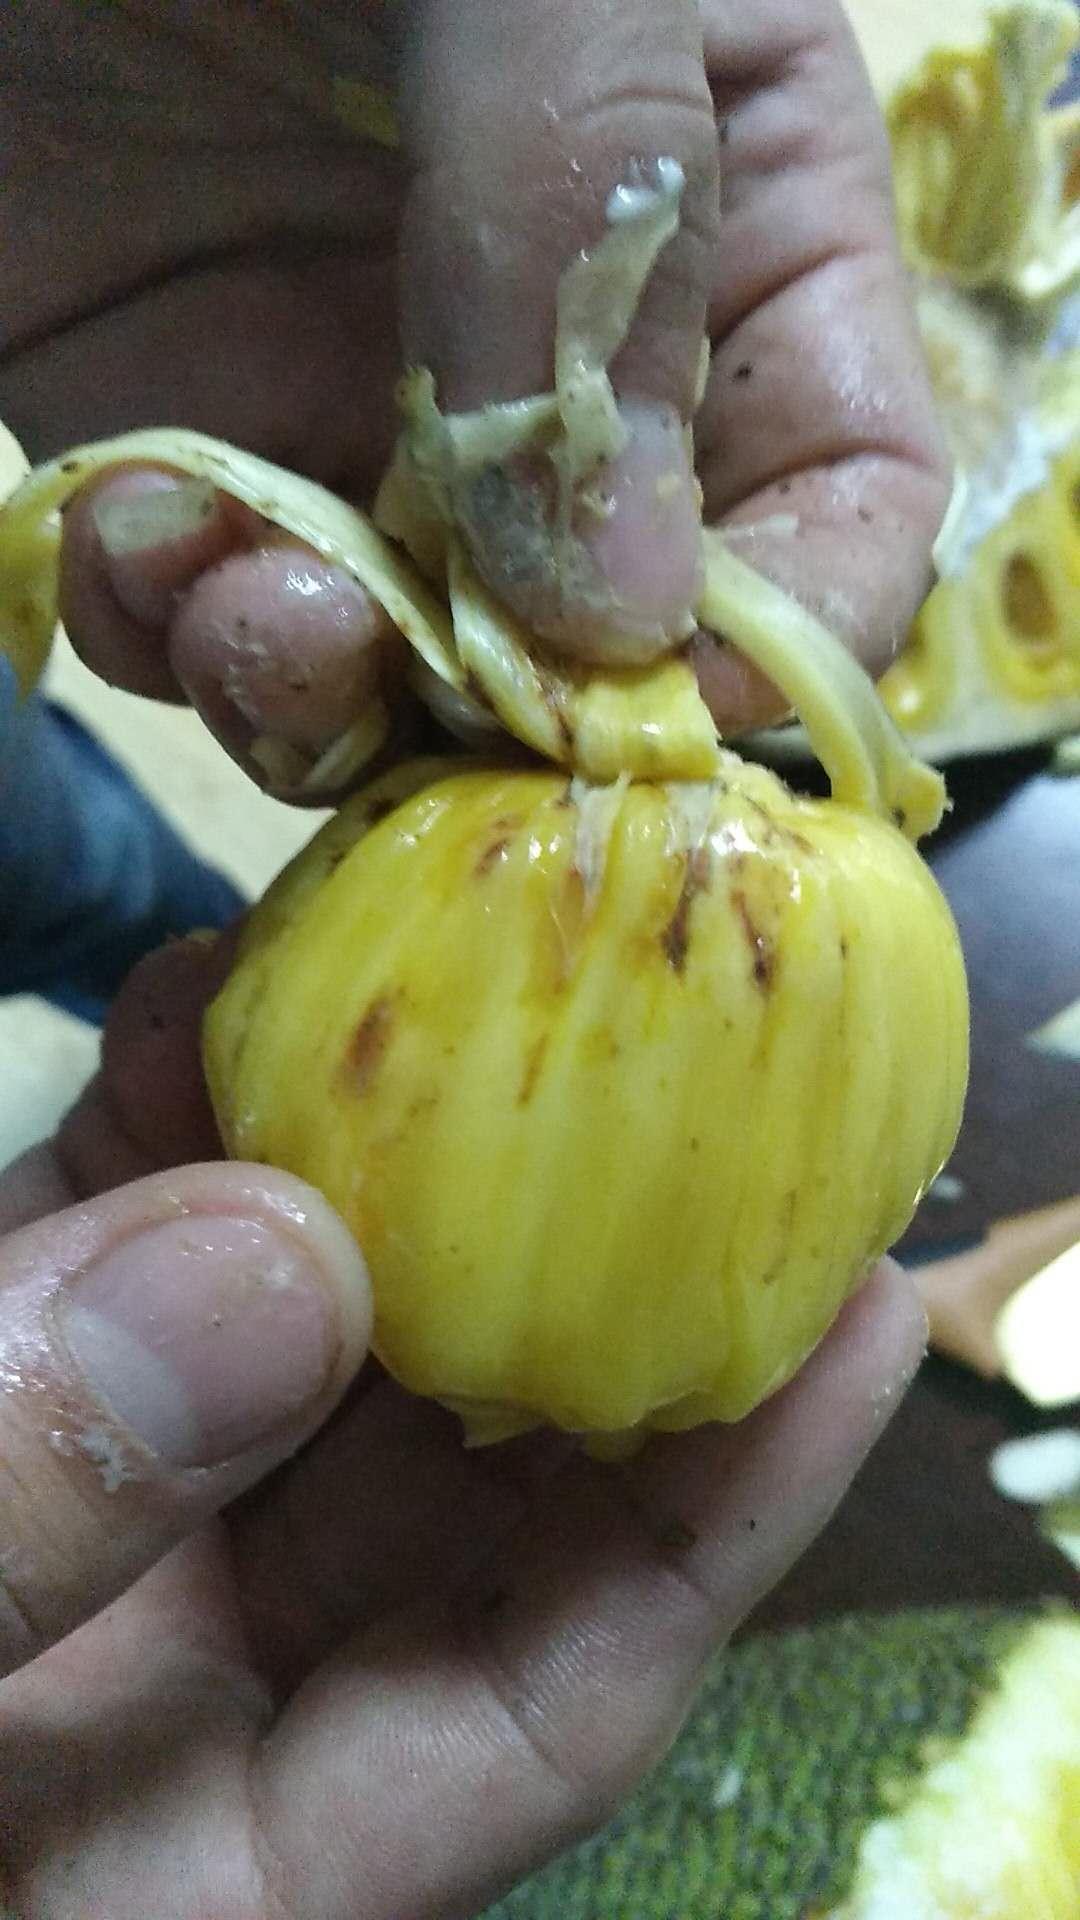 菠萝蜜锈斑图片